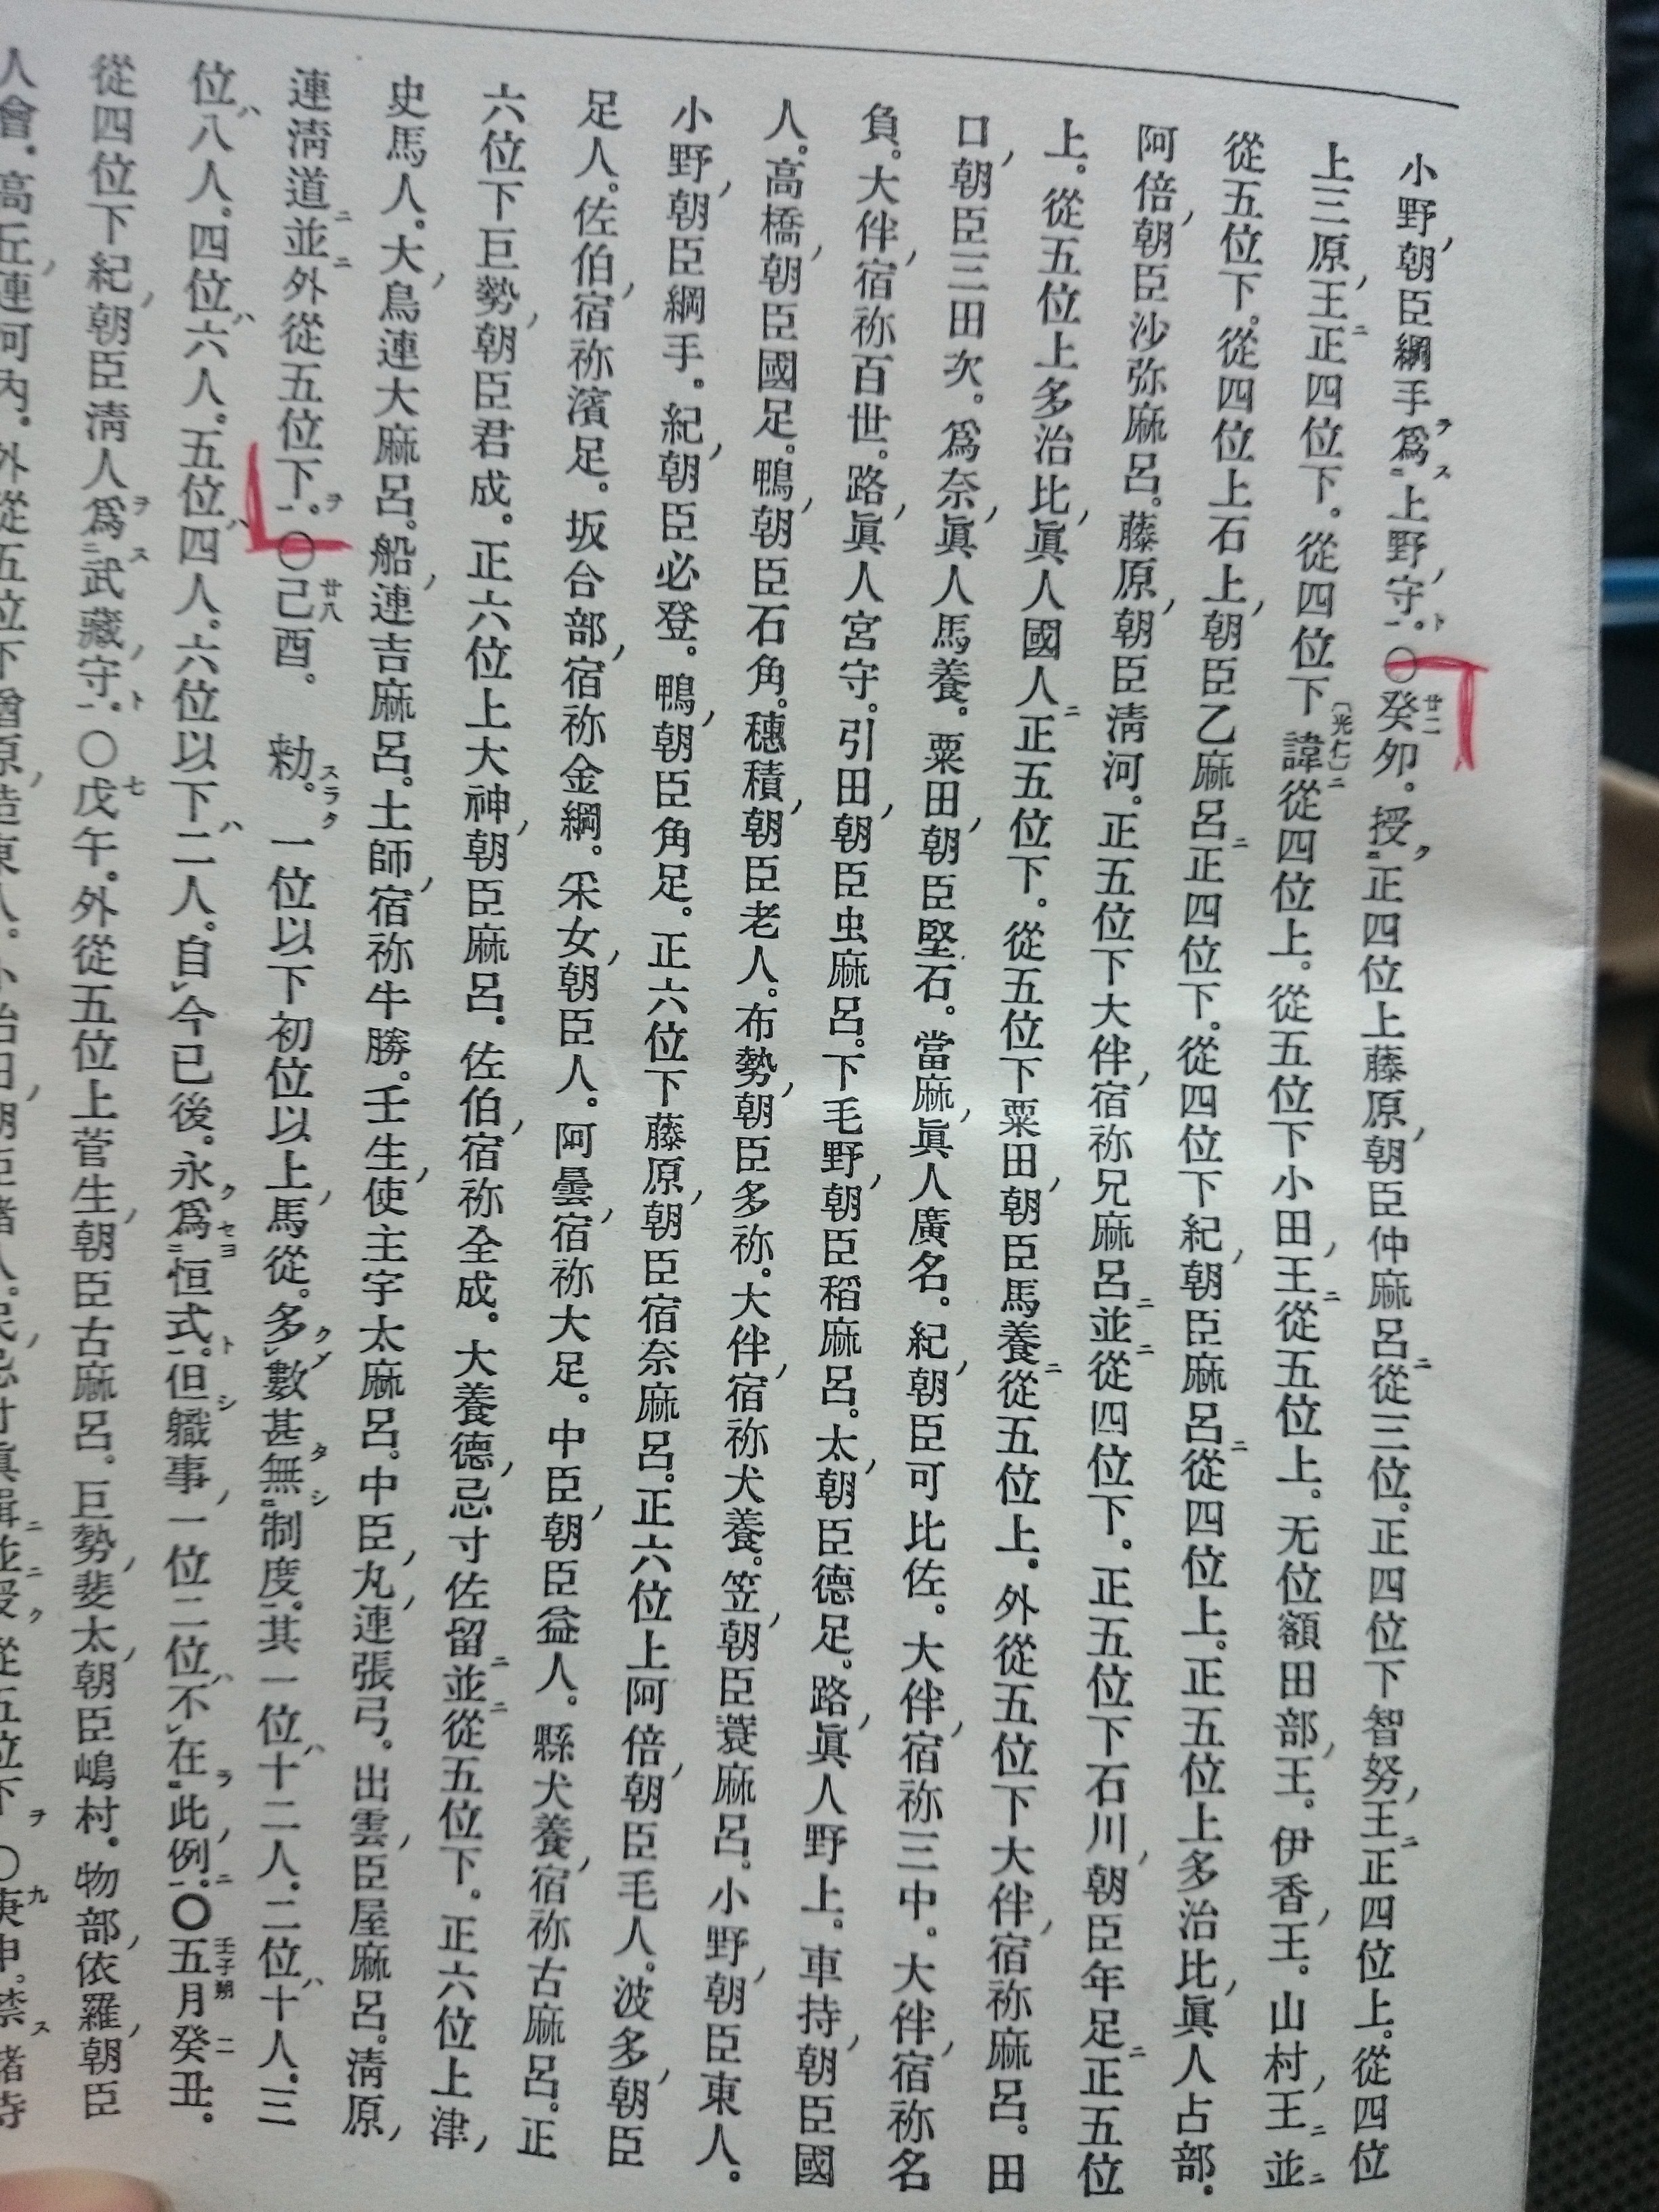 続日本紀巻第十五の書き下し文をお願いします 画像のカッコで囲んであ Yahoo 知恵袋